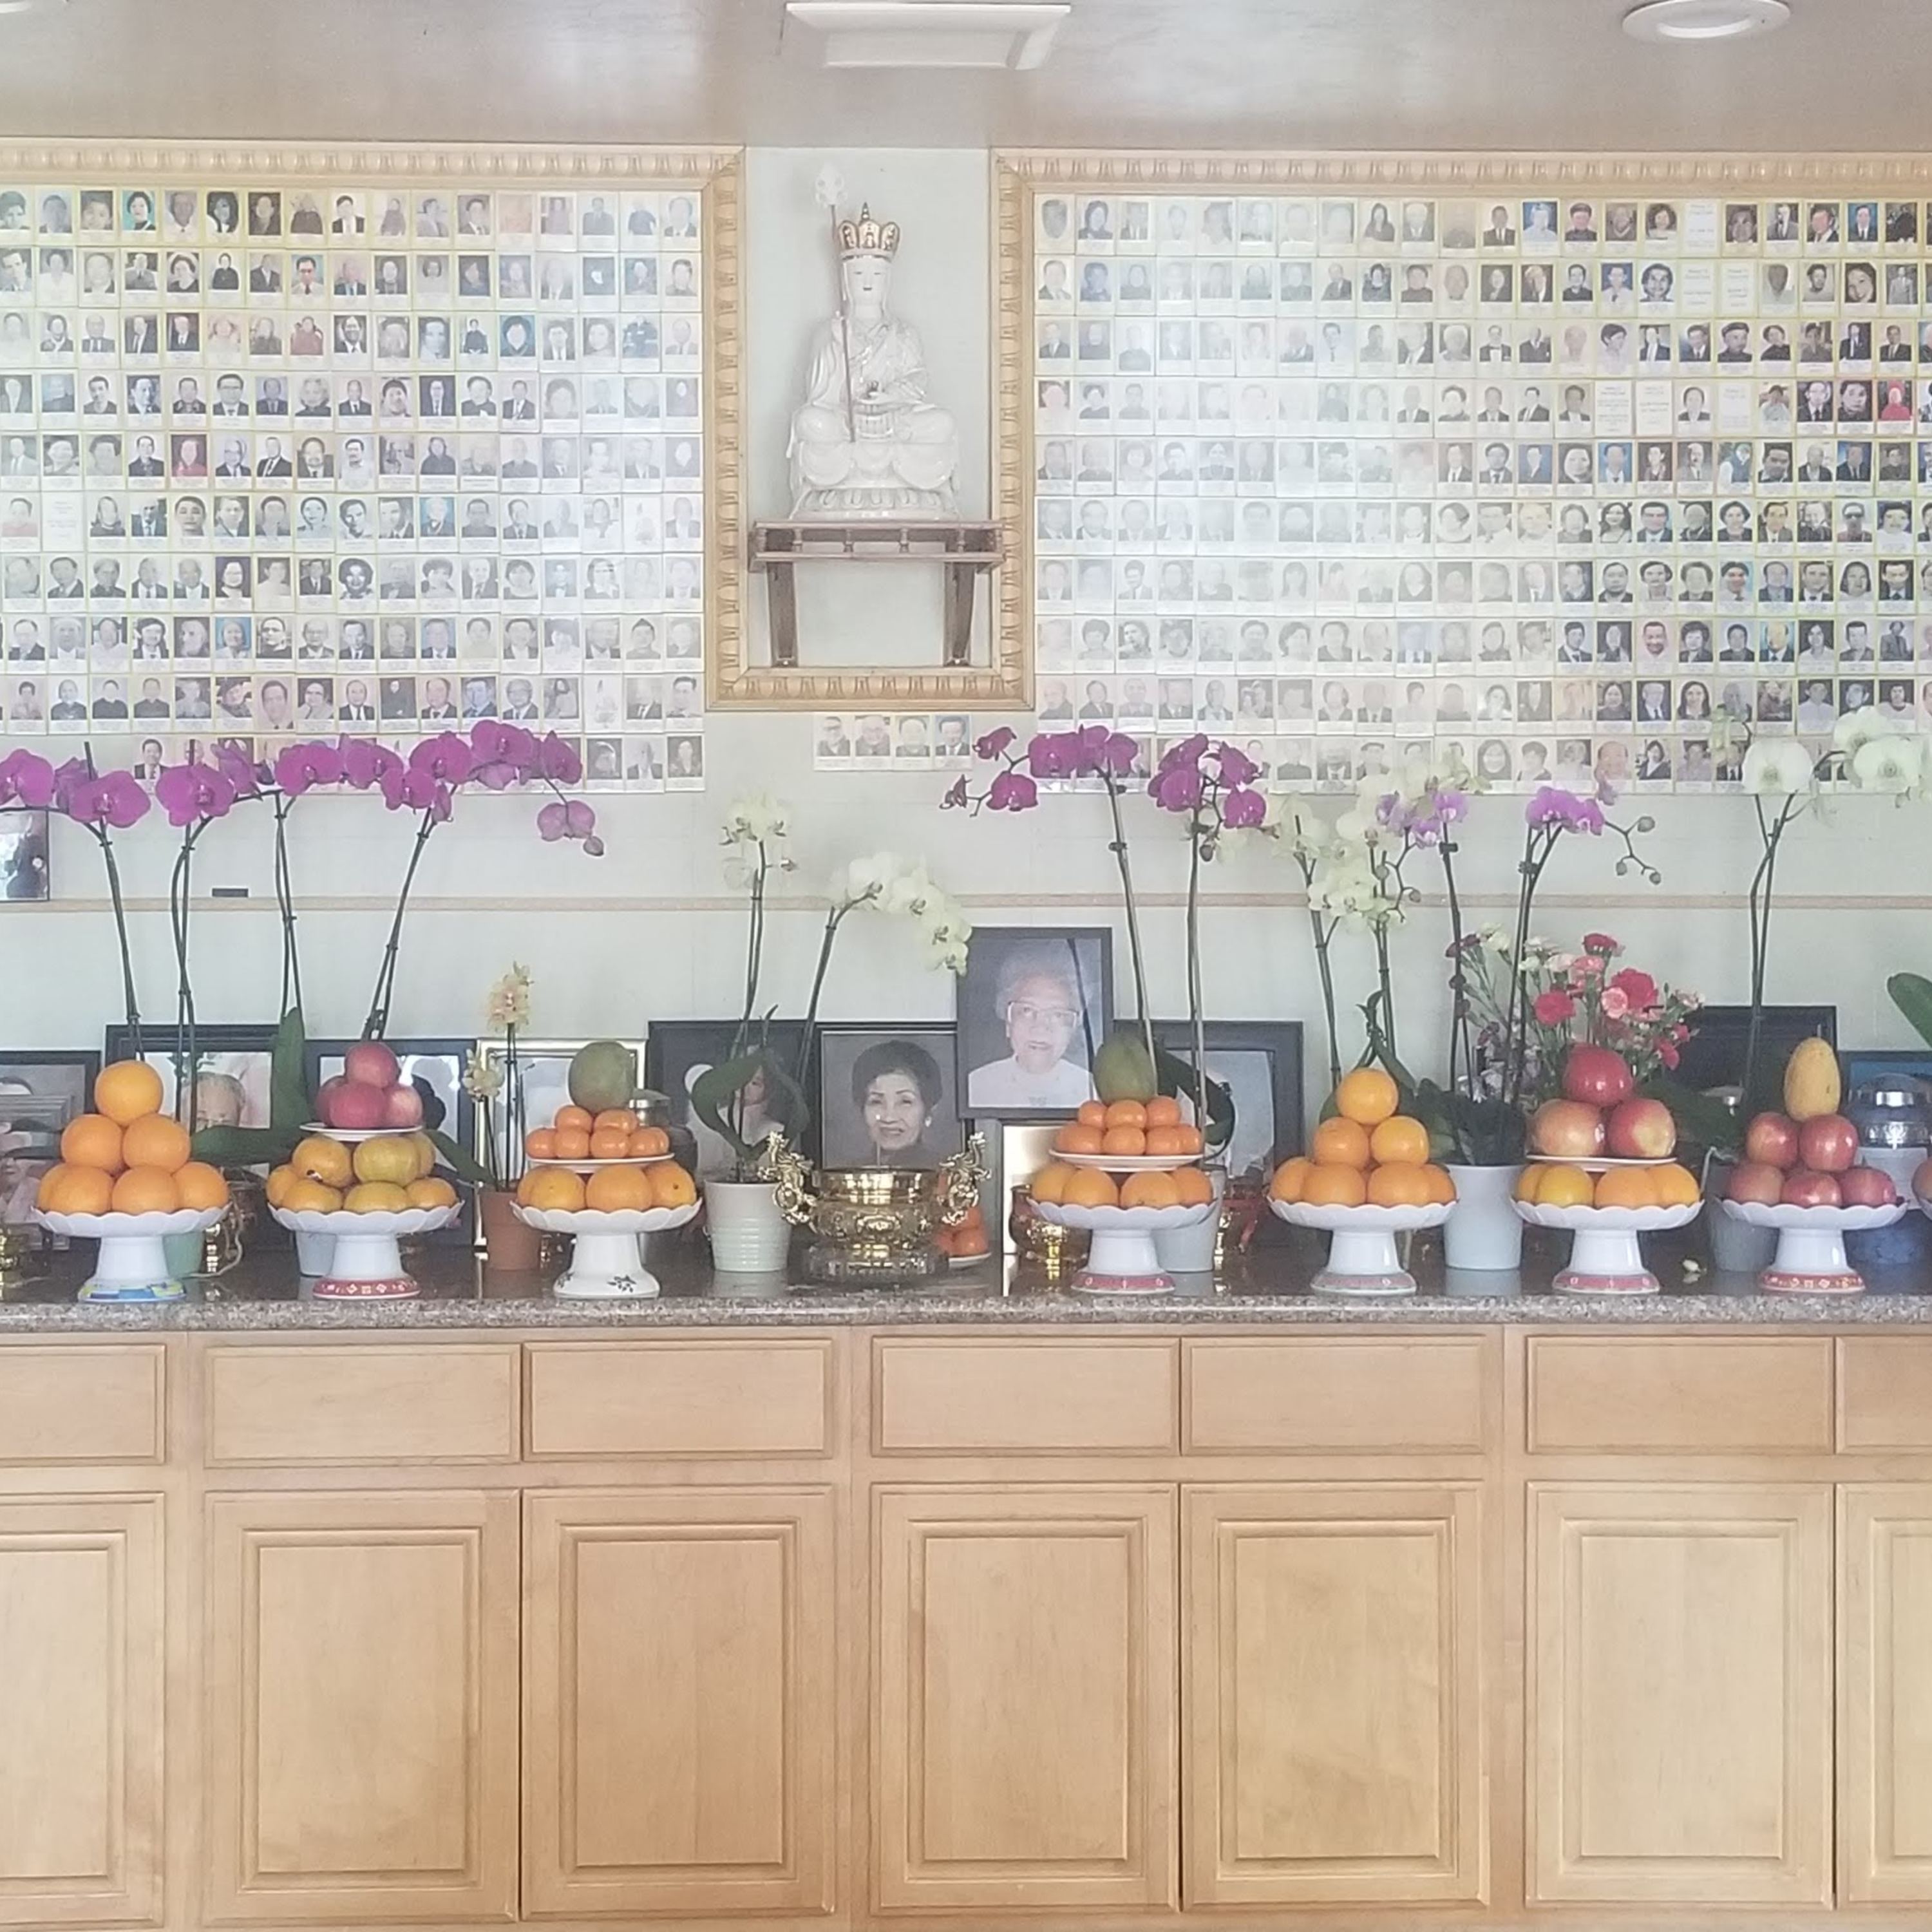 Tu Lam Temple Photo of the Deceased